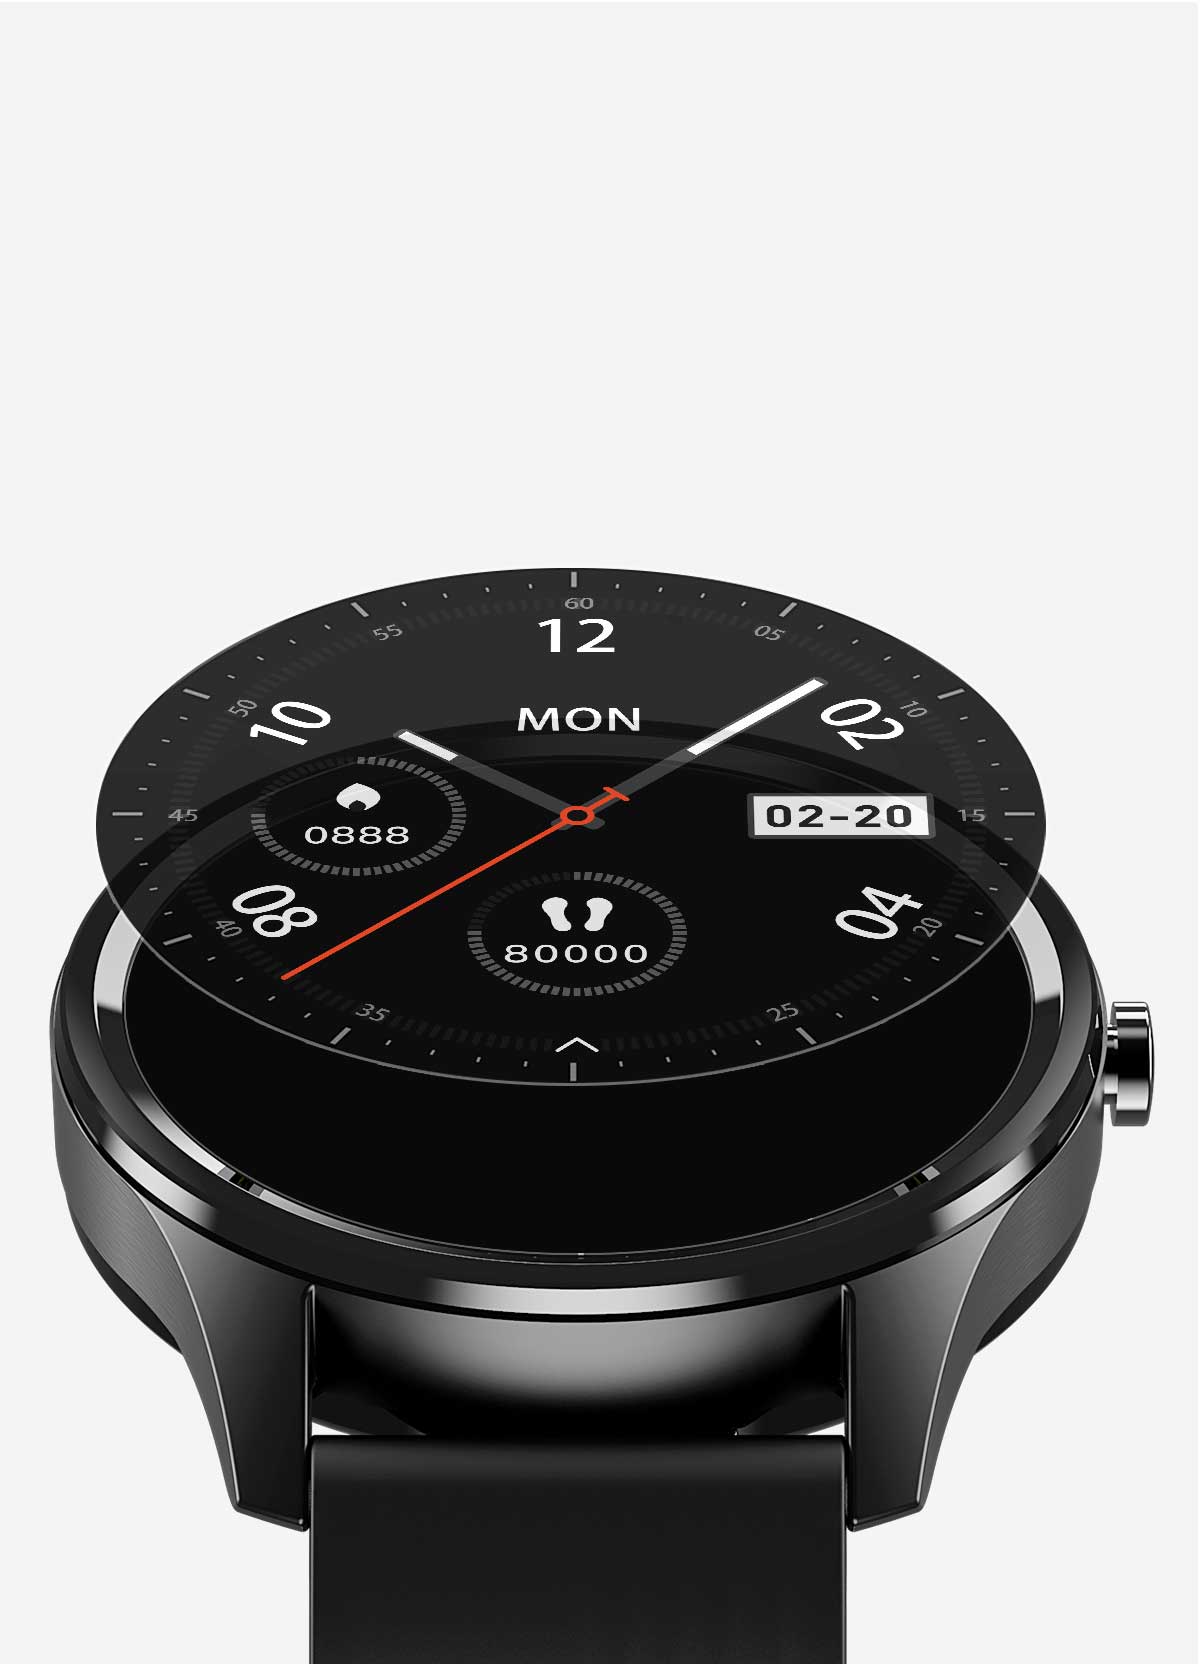 Smartwatch DT55